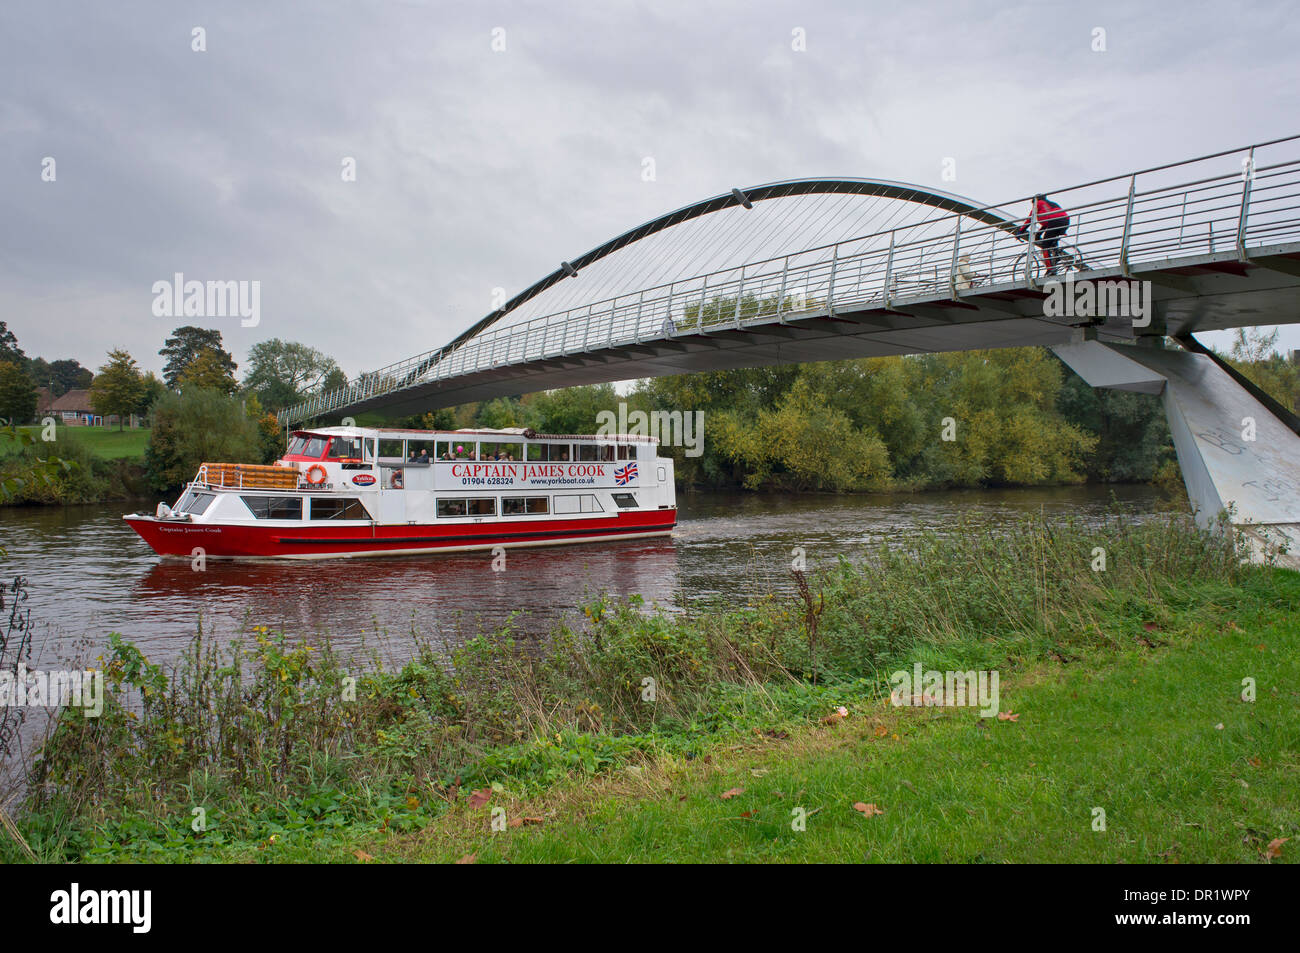 I passeggeri possono usufruire di viaggio navigando sul fiume Ouse a bordo di piccole imbarcazioni di crociera, passando sotto il Ponte del Millennio come ciclista attraversa overhead - York, Inghilterra, Regno Unito. Foto Stock